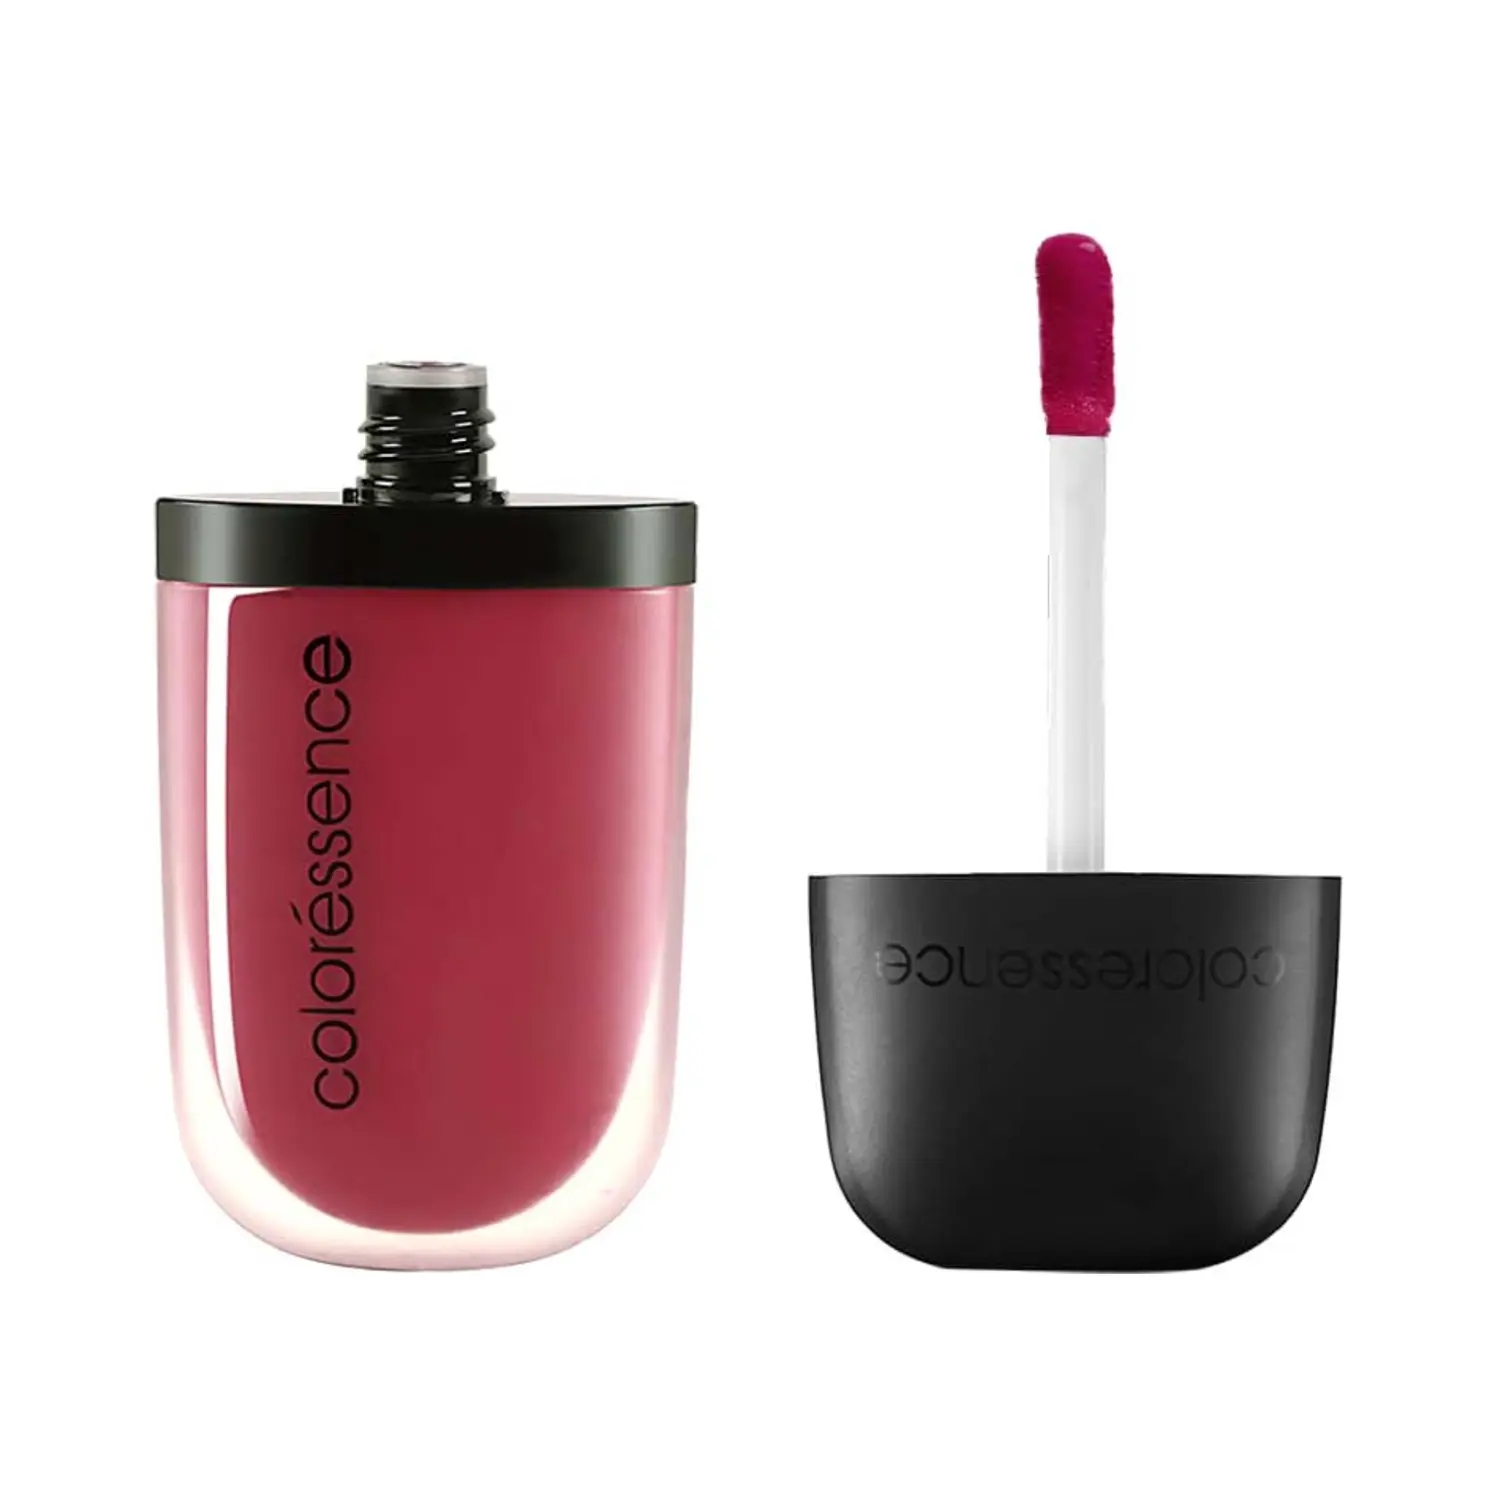 Coloressence | Coloressence Intense Soft Matte Liquid Lip Color Lipstick - Bougainvillea (8ml)